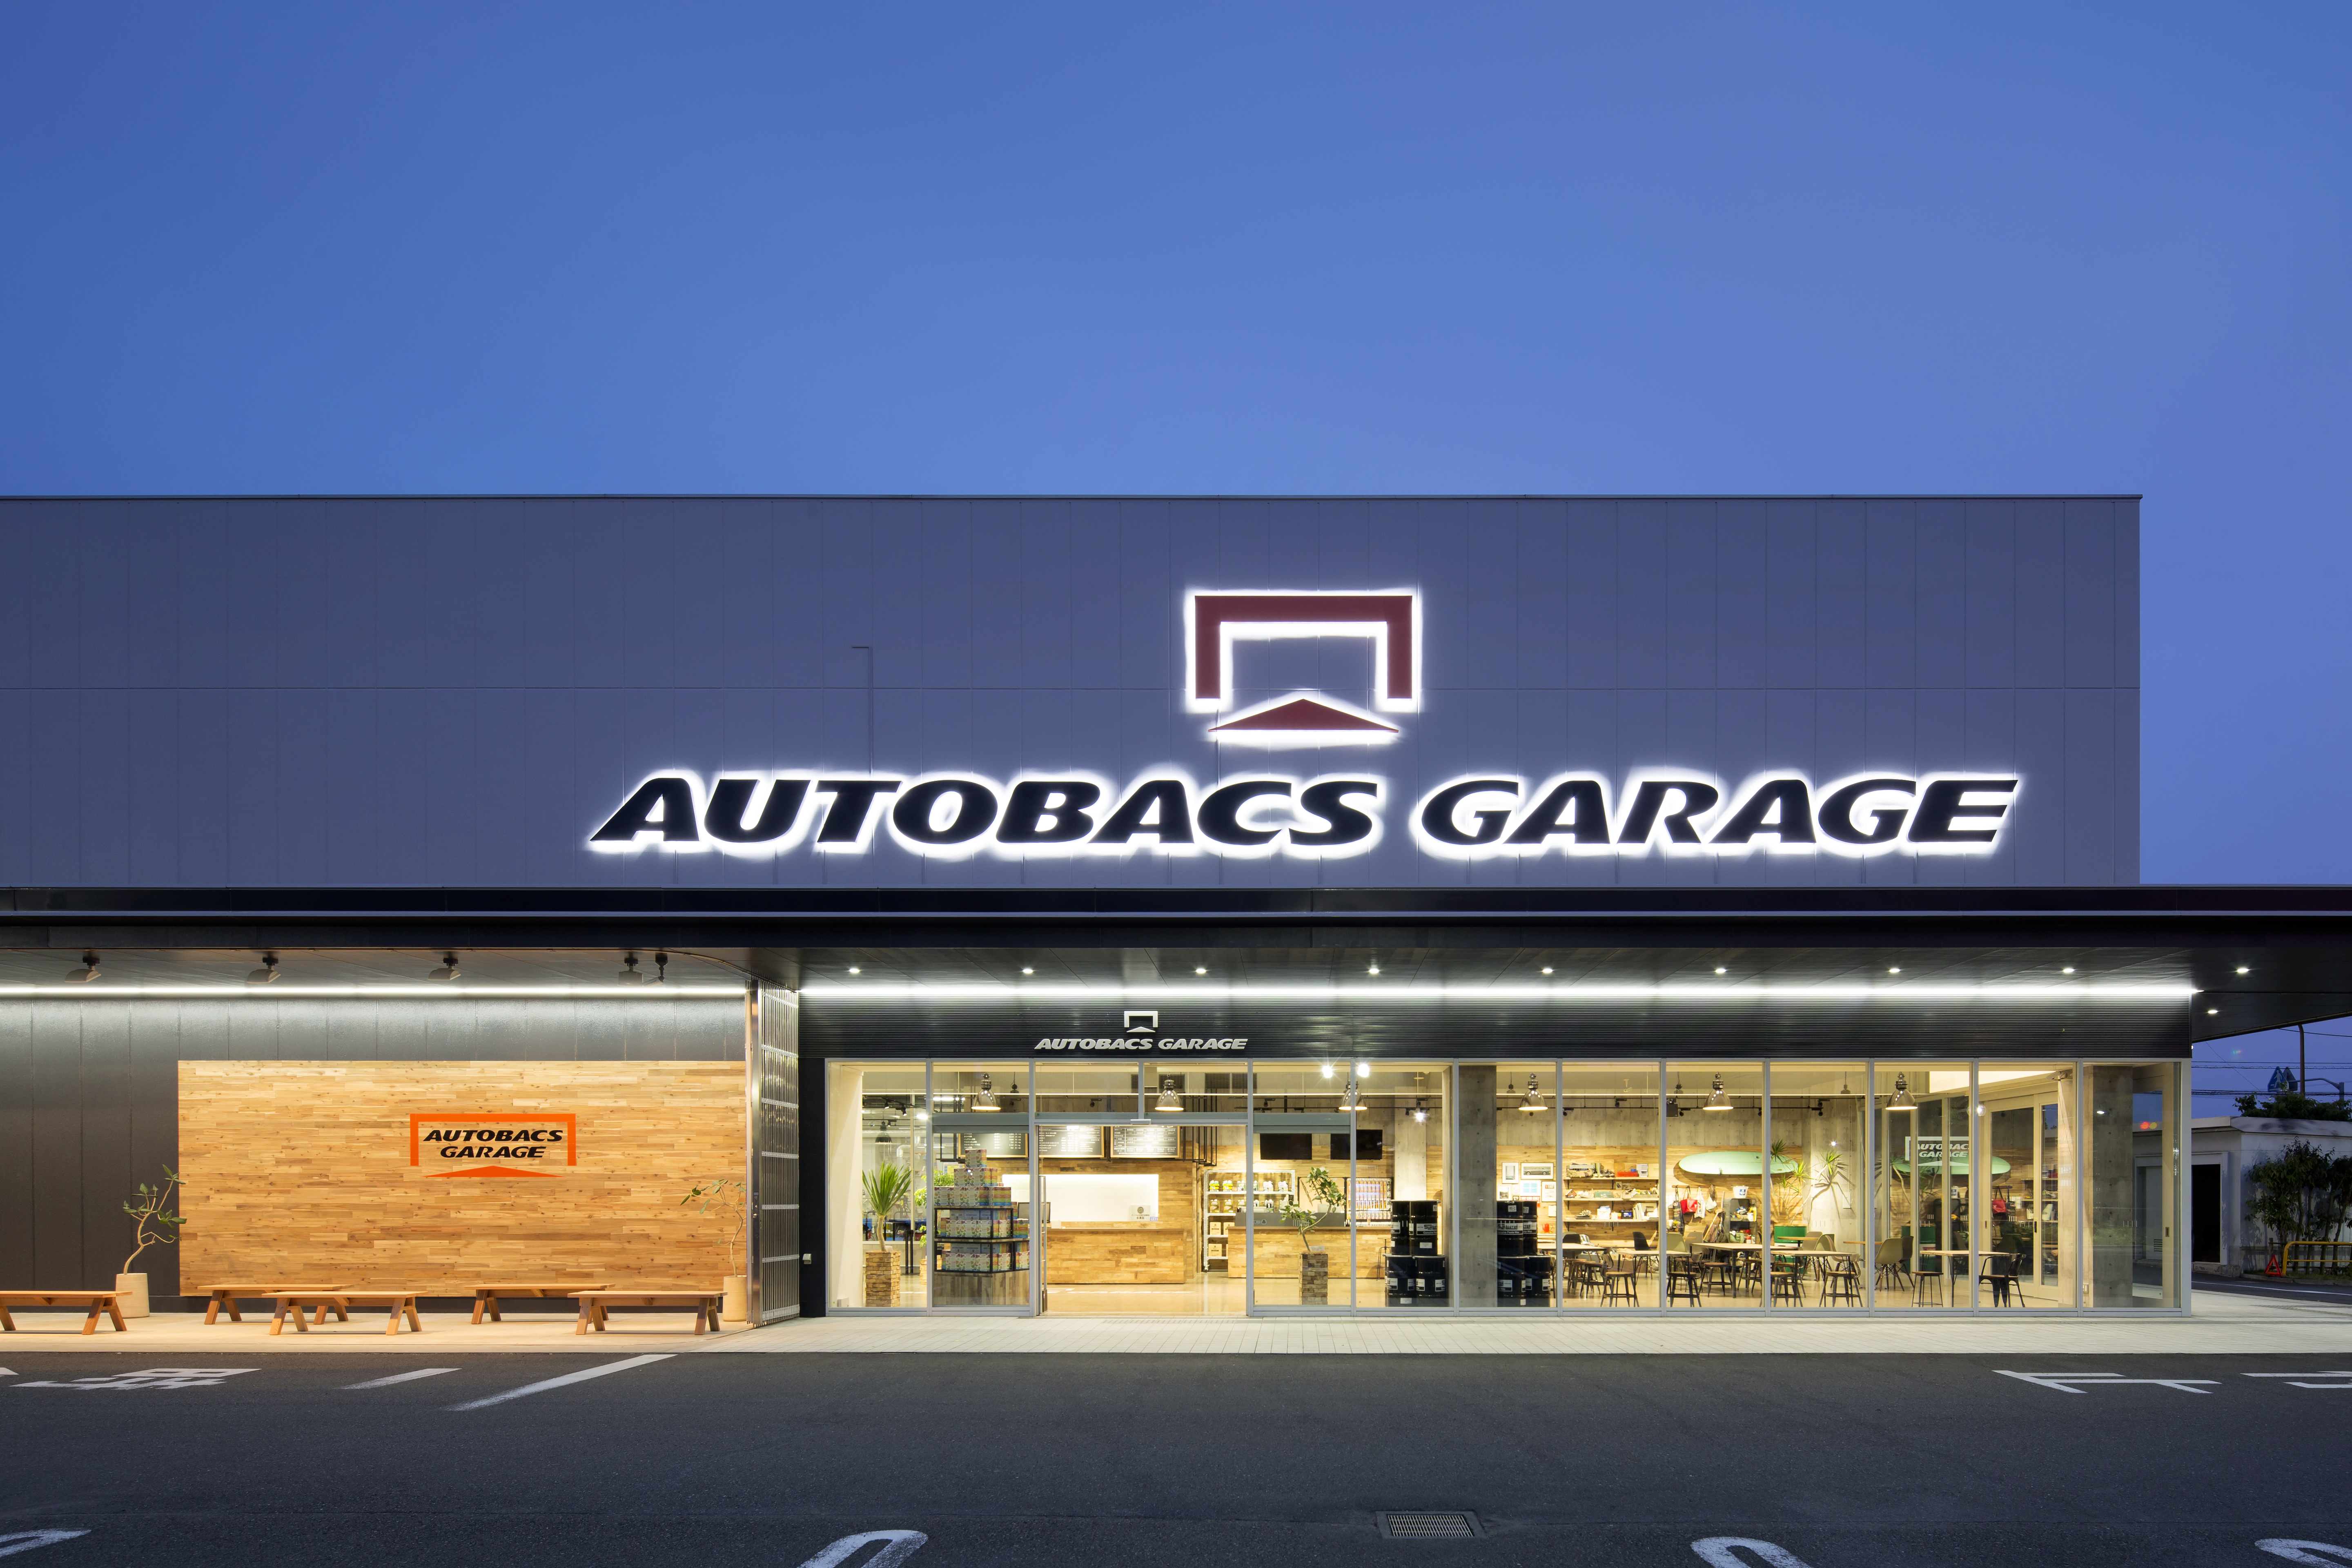 Autobacs Garage Fuchu Sdl Co Ltd 株式会社エス ディー エル